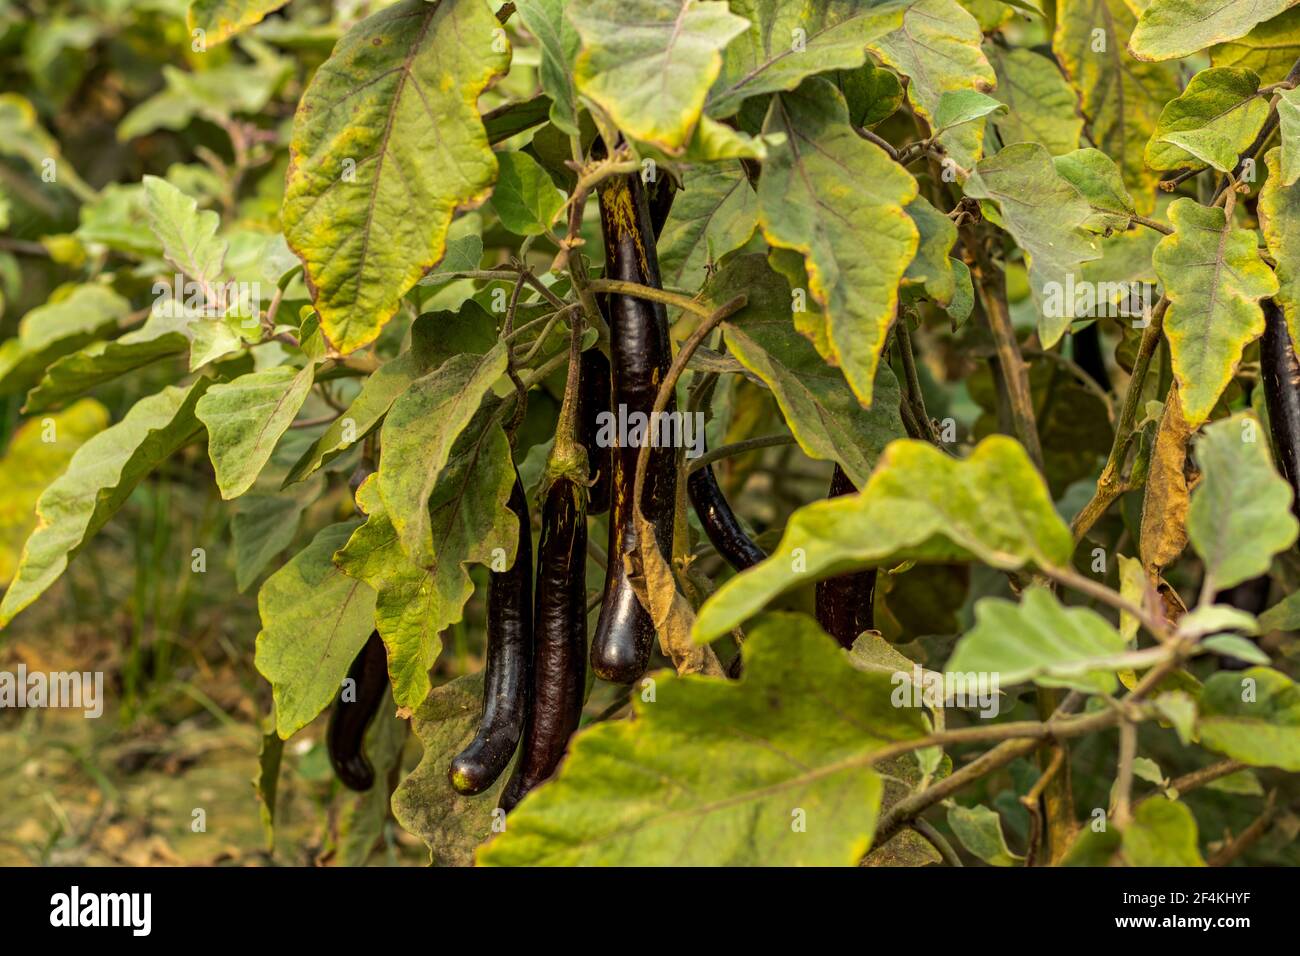 Black Eggplant porta molte forme e colori classici come lucido, viola-nero, verde, ecc, in quanto è una delle cultivar più popolari di Vegeta Foto Stock